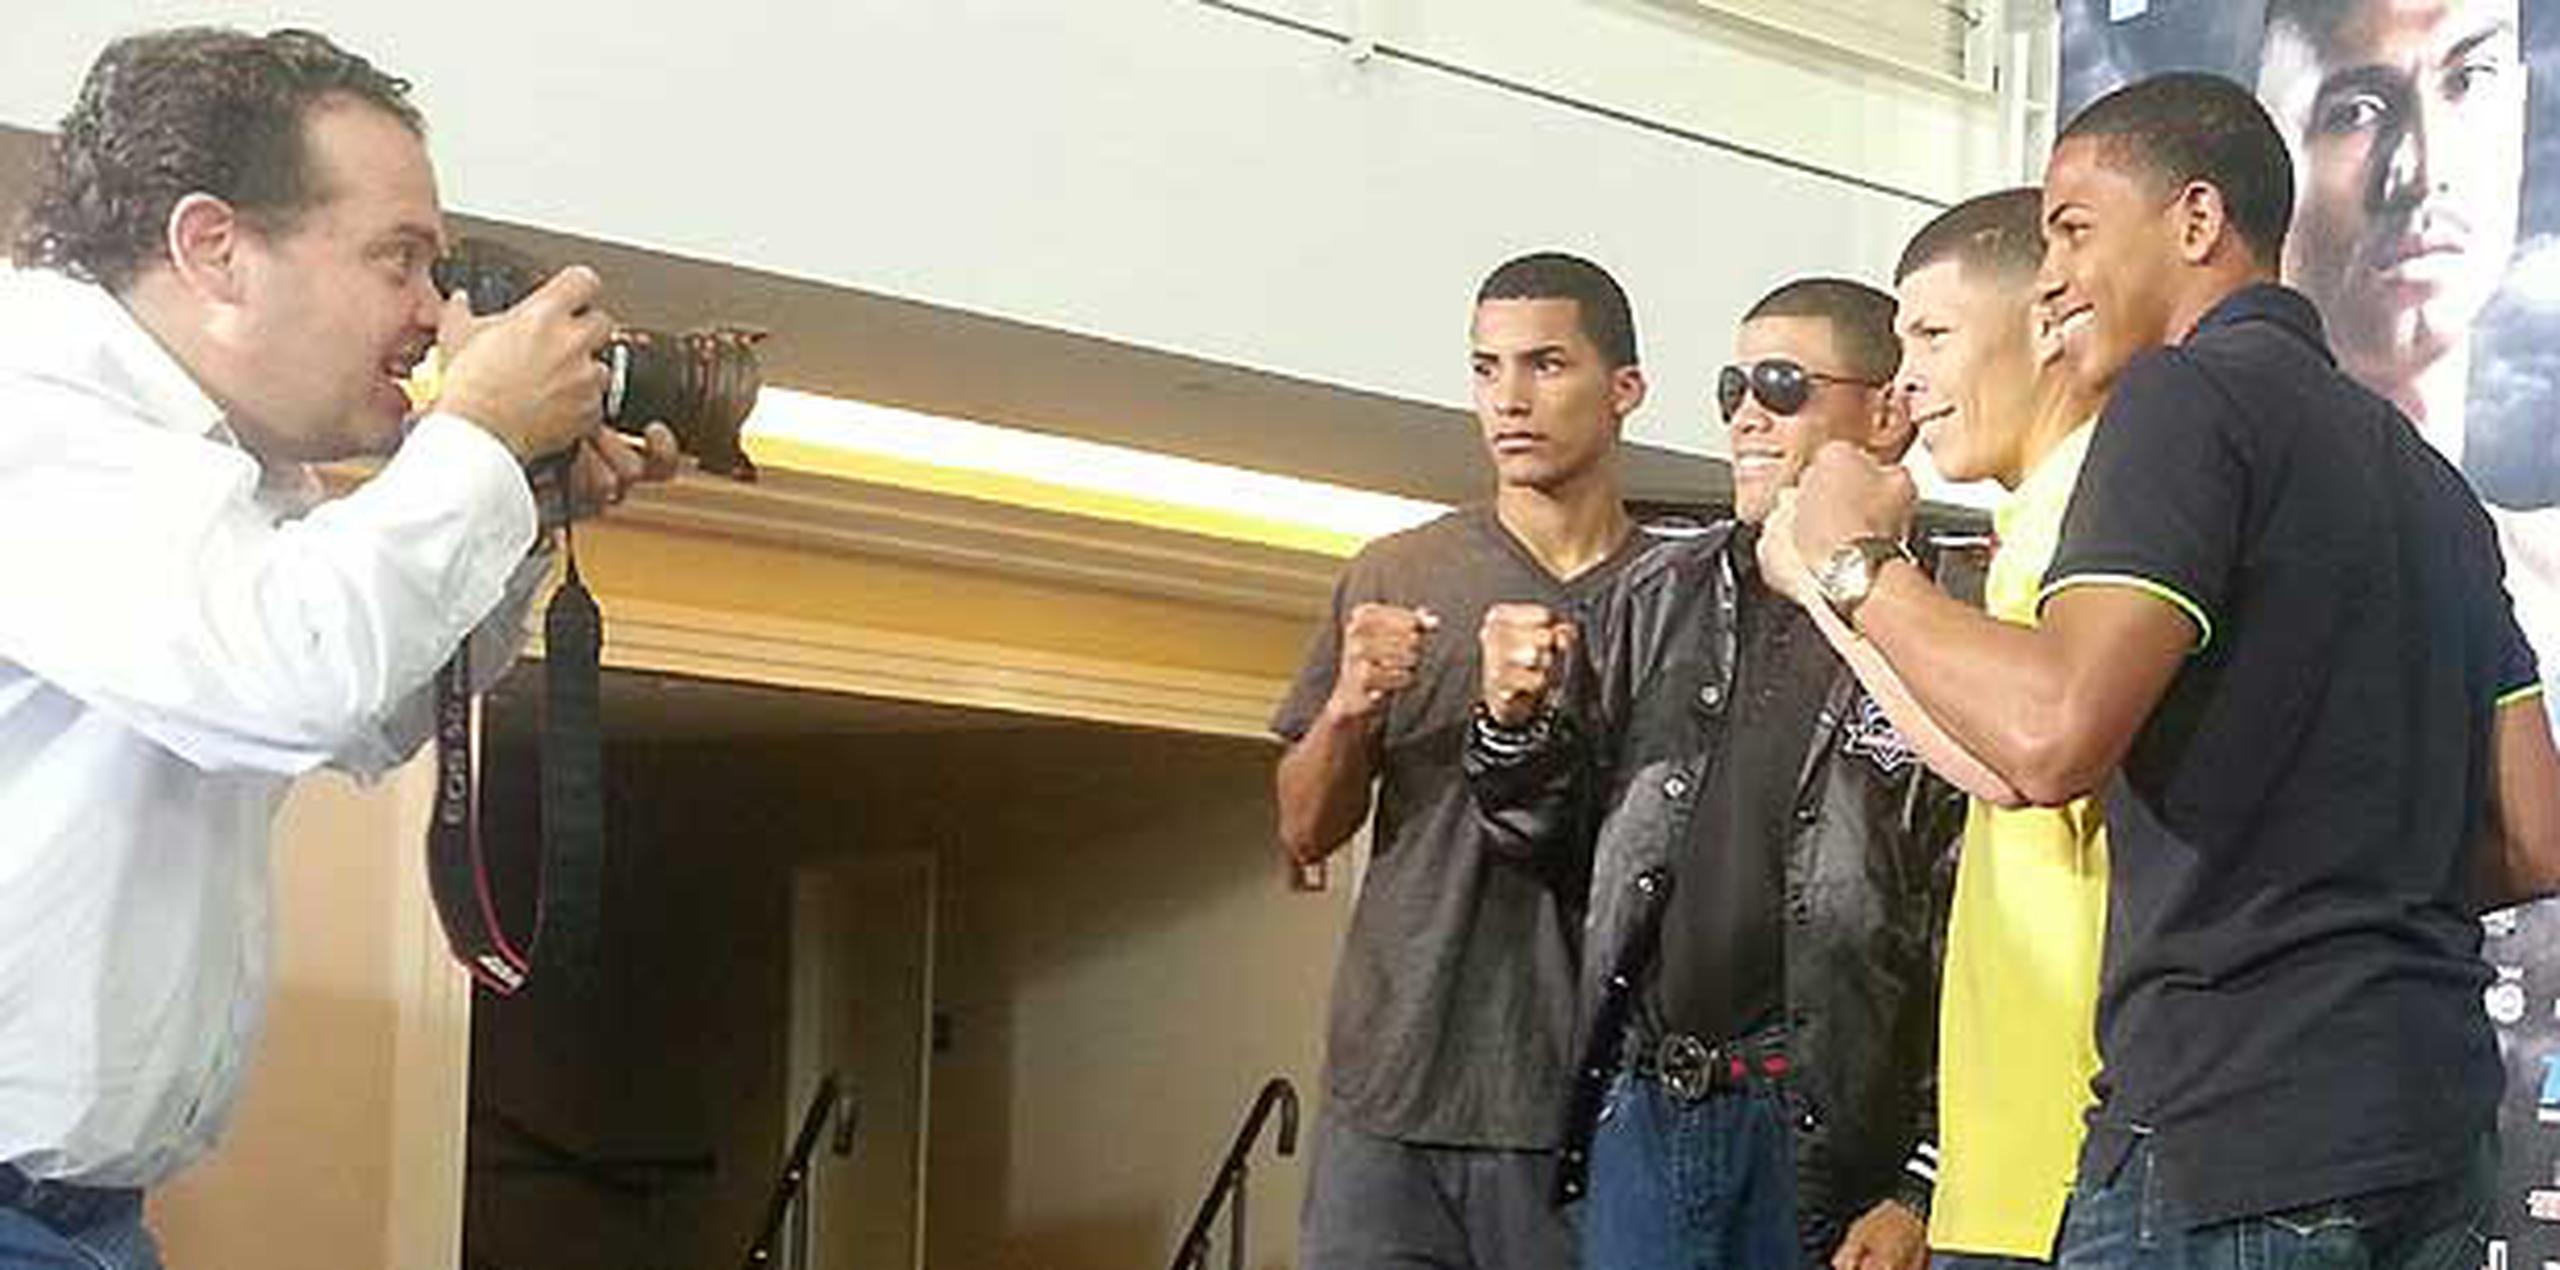 Los boxeadores verán acción en el American Airlines Center de Dallas. (carlos.gonzalez@primerahora.com